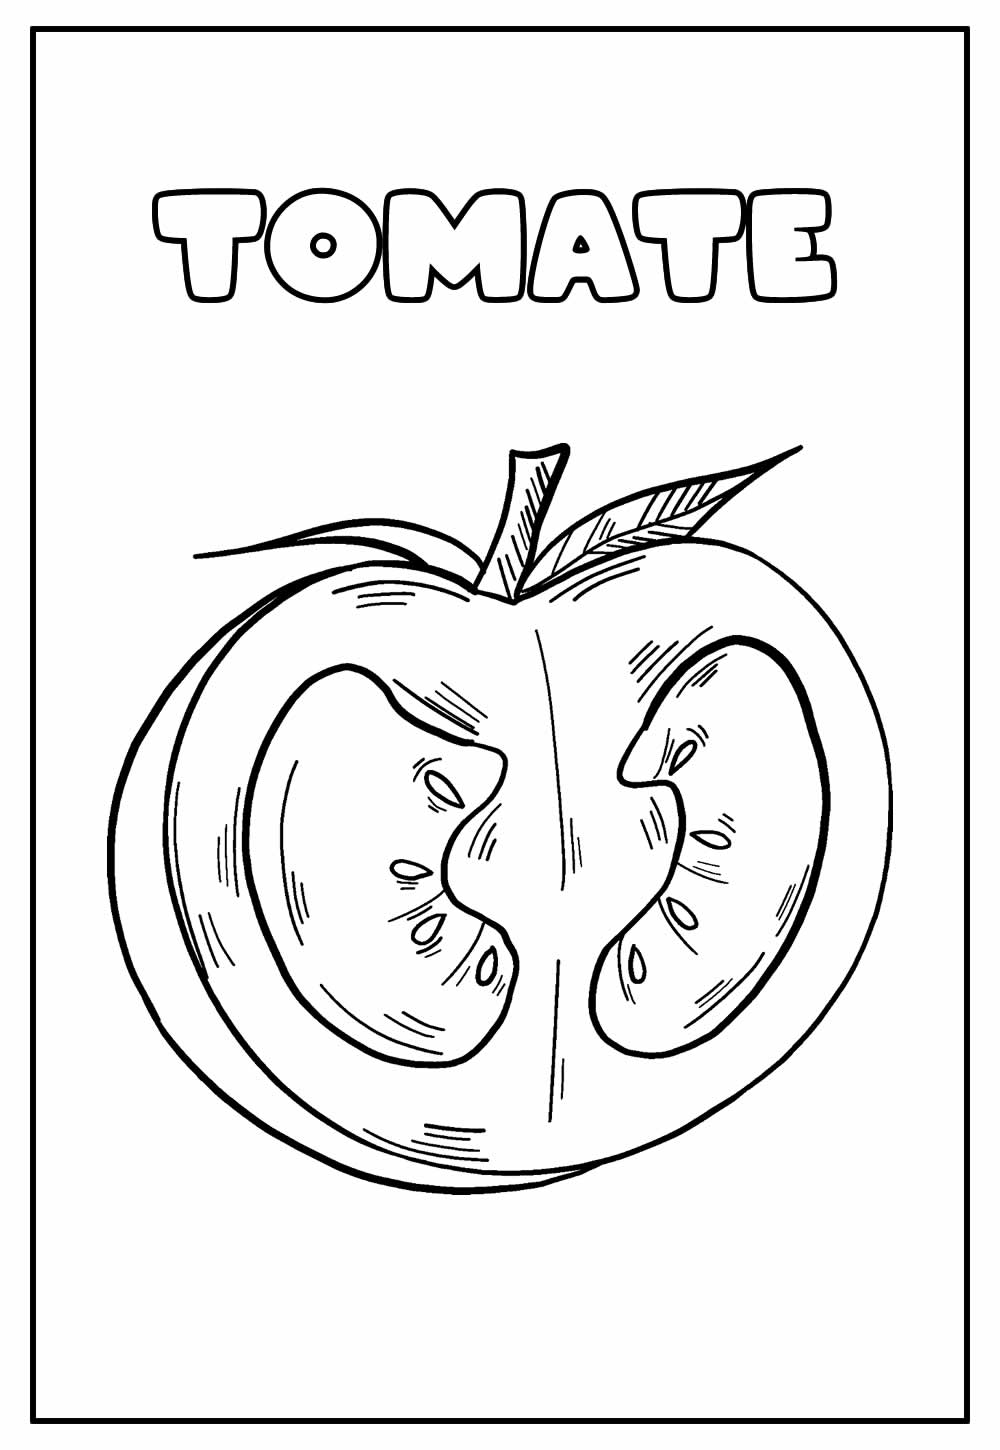 Desenho Educativo de Tomate para colorir